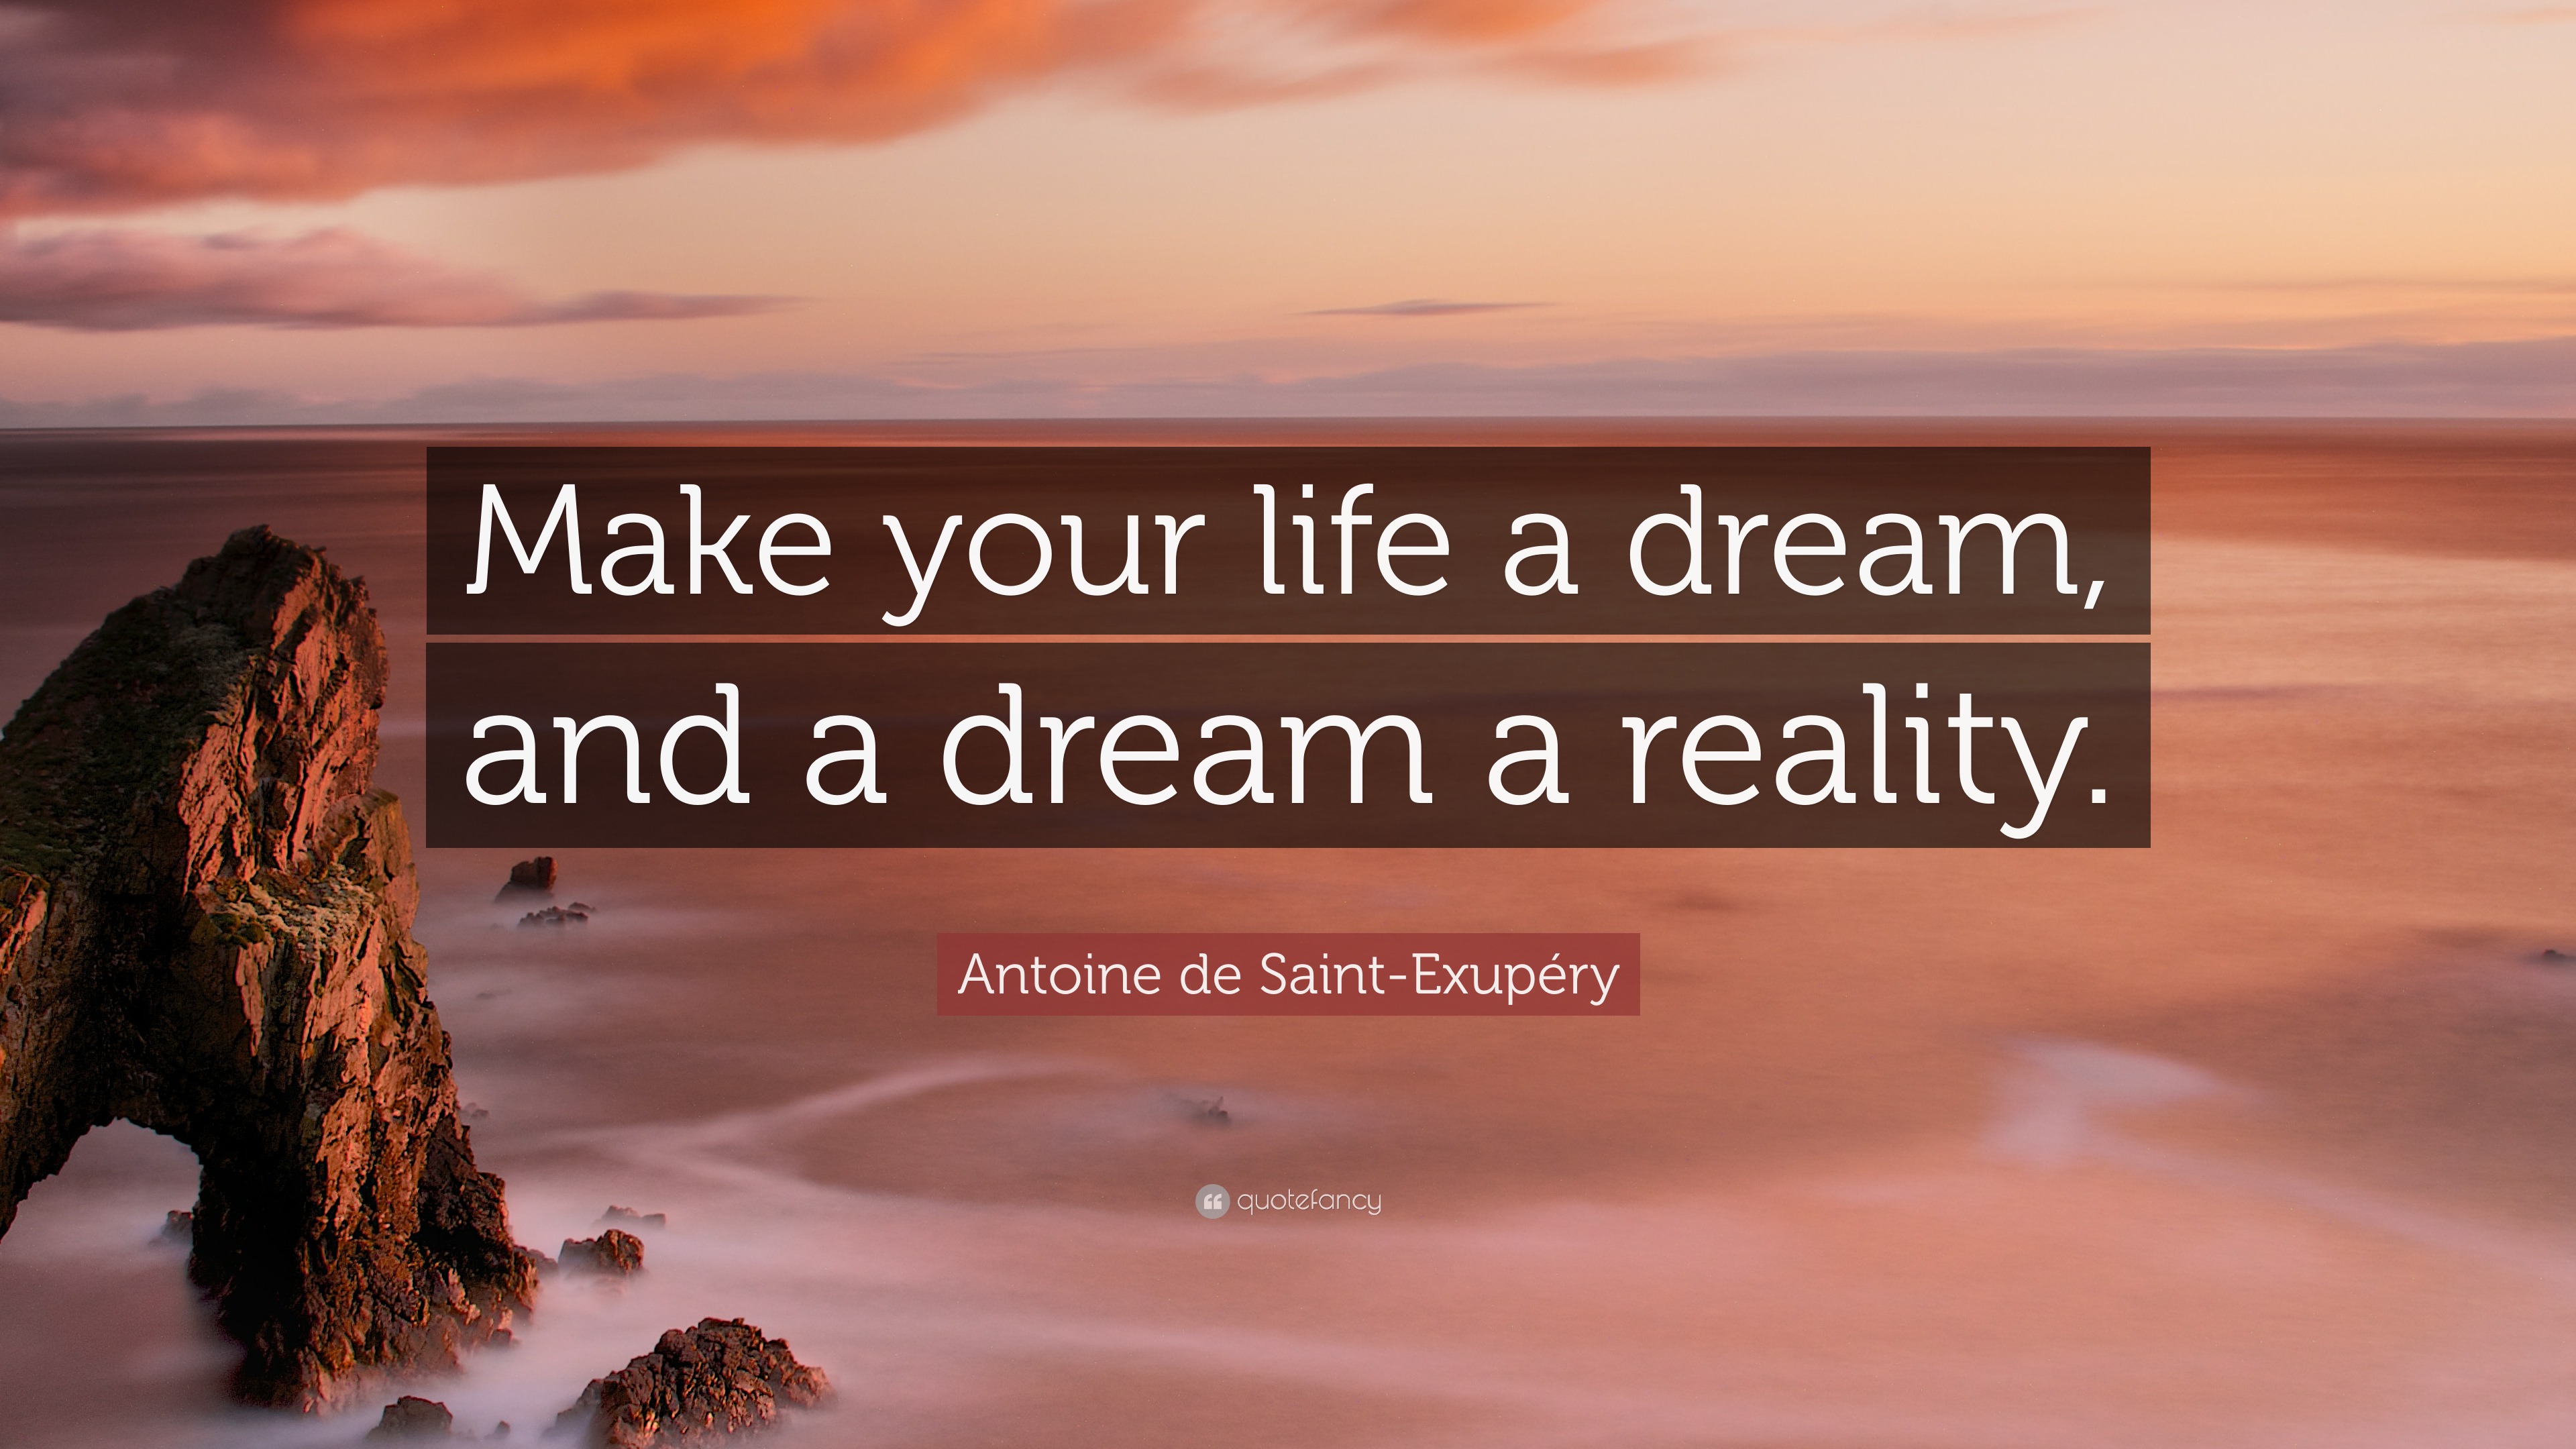 Antoine de Saint-Exupéry Quote: “Make your life a dream, and a dream a